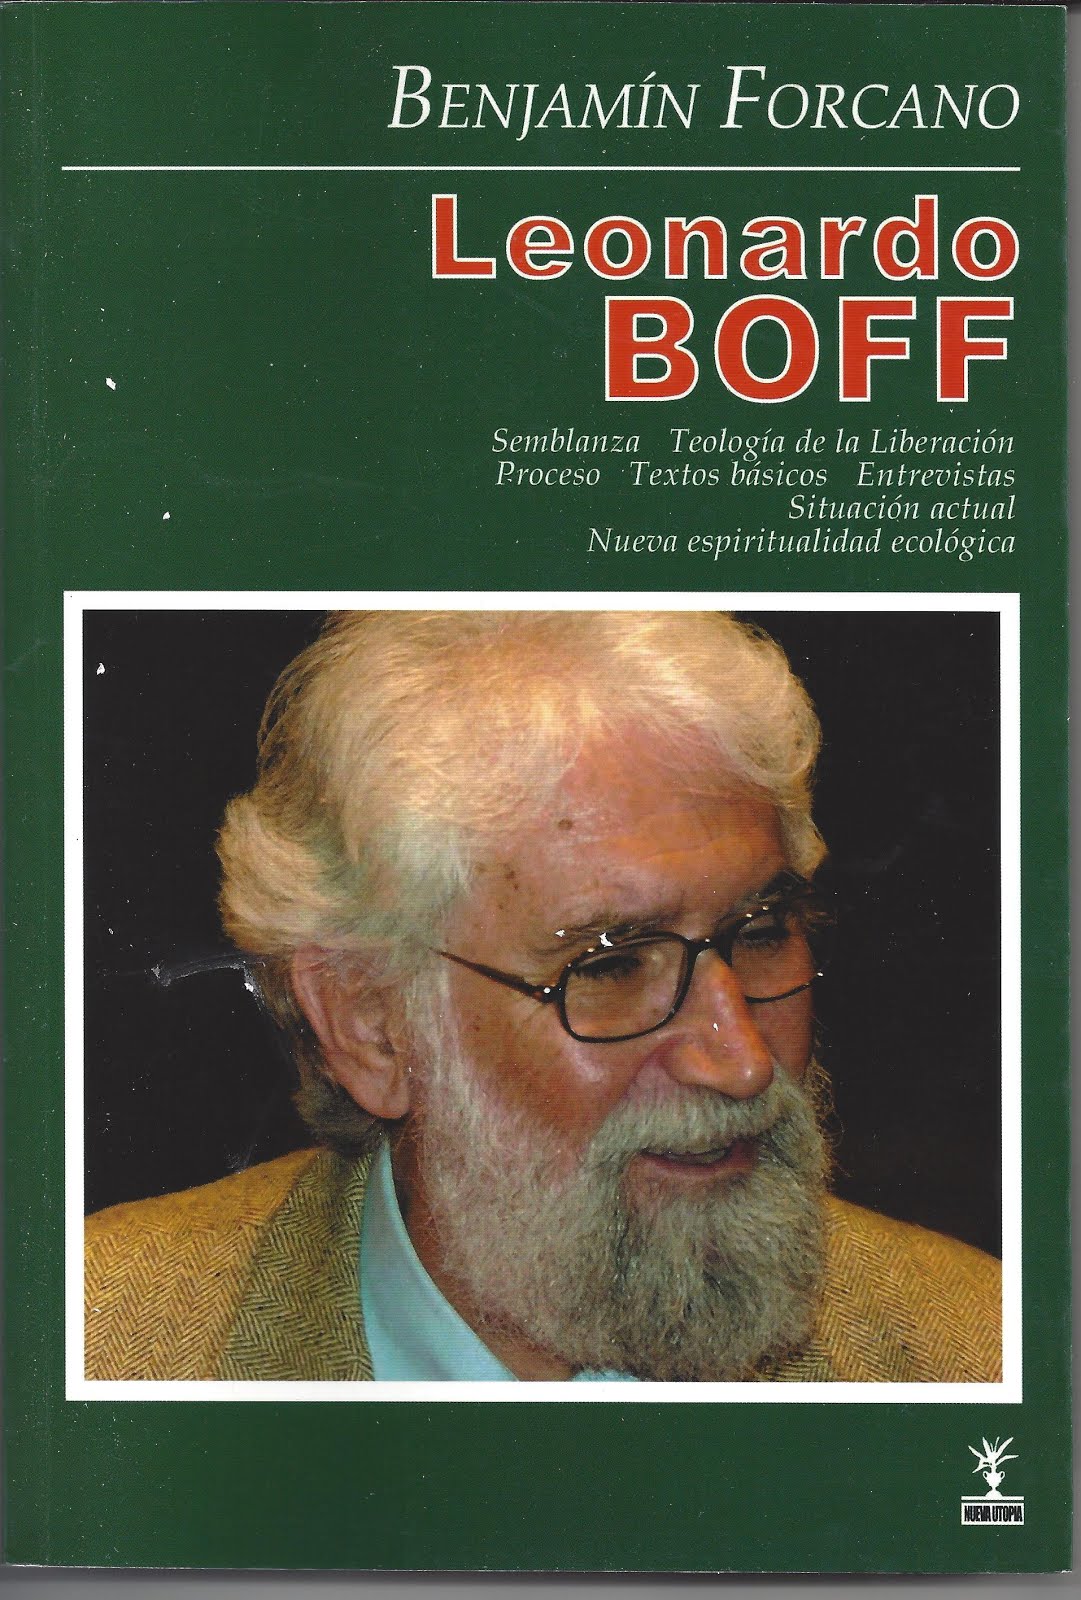 Benjamin Forcano: LEONARDO BOFF